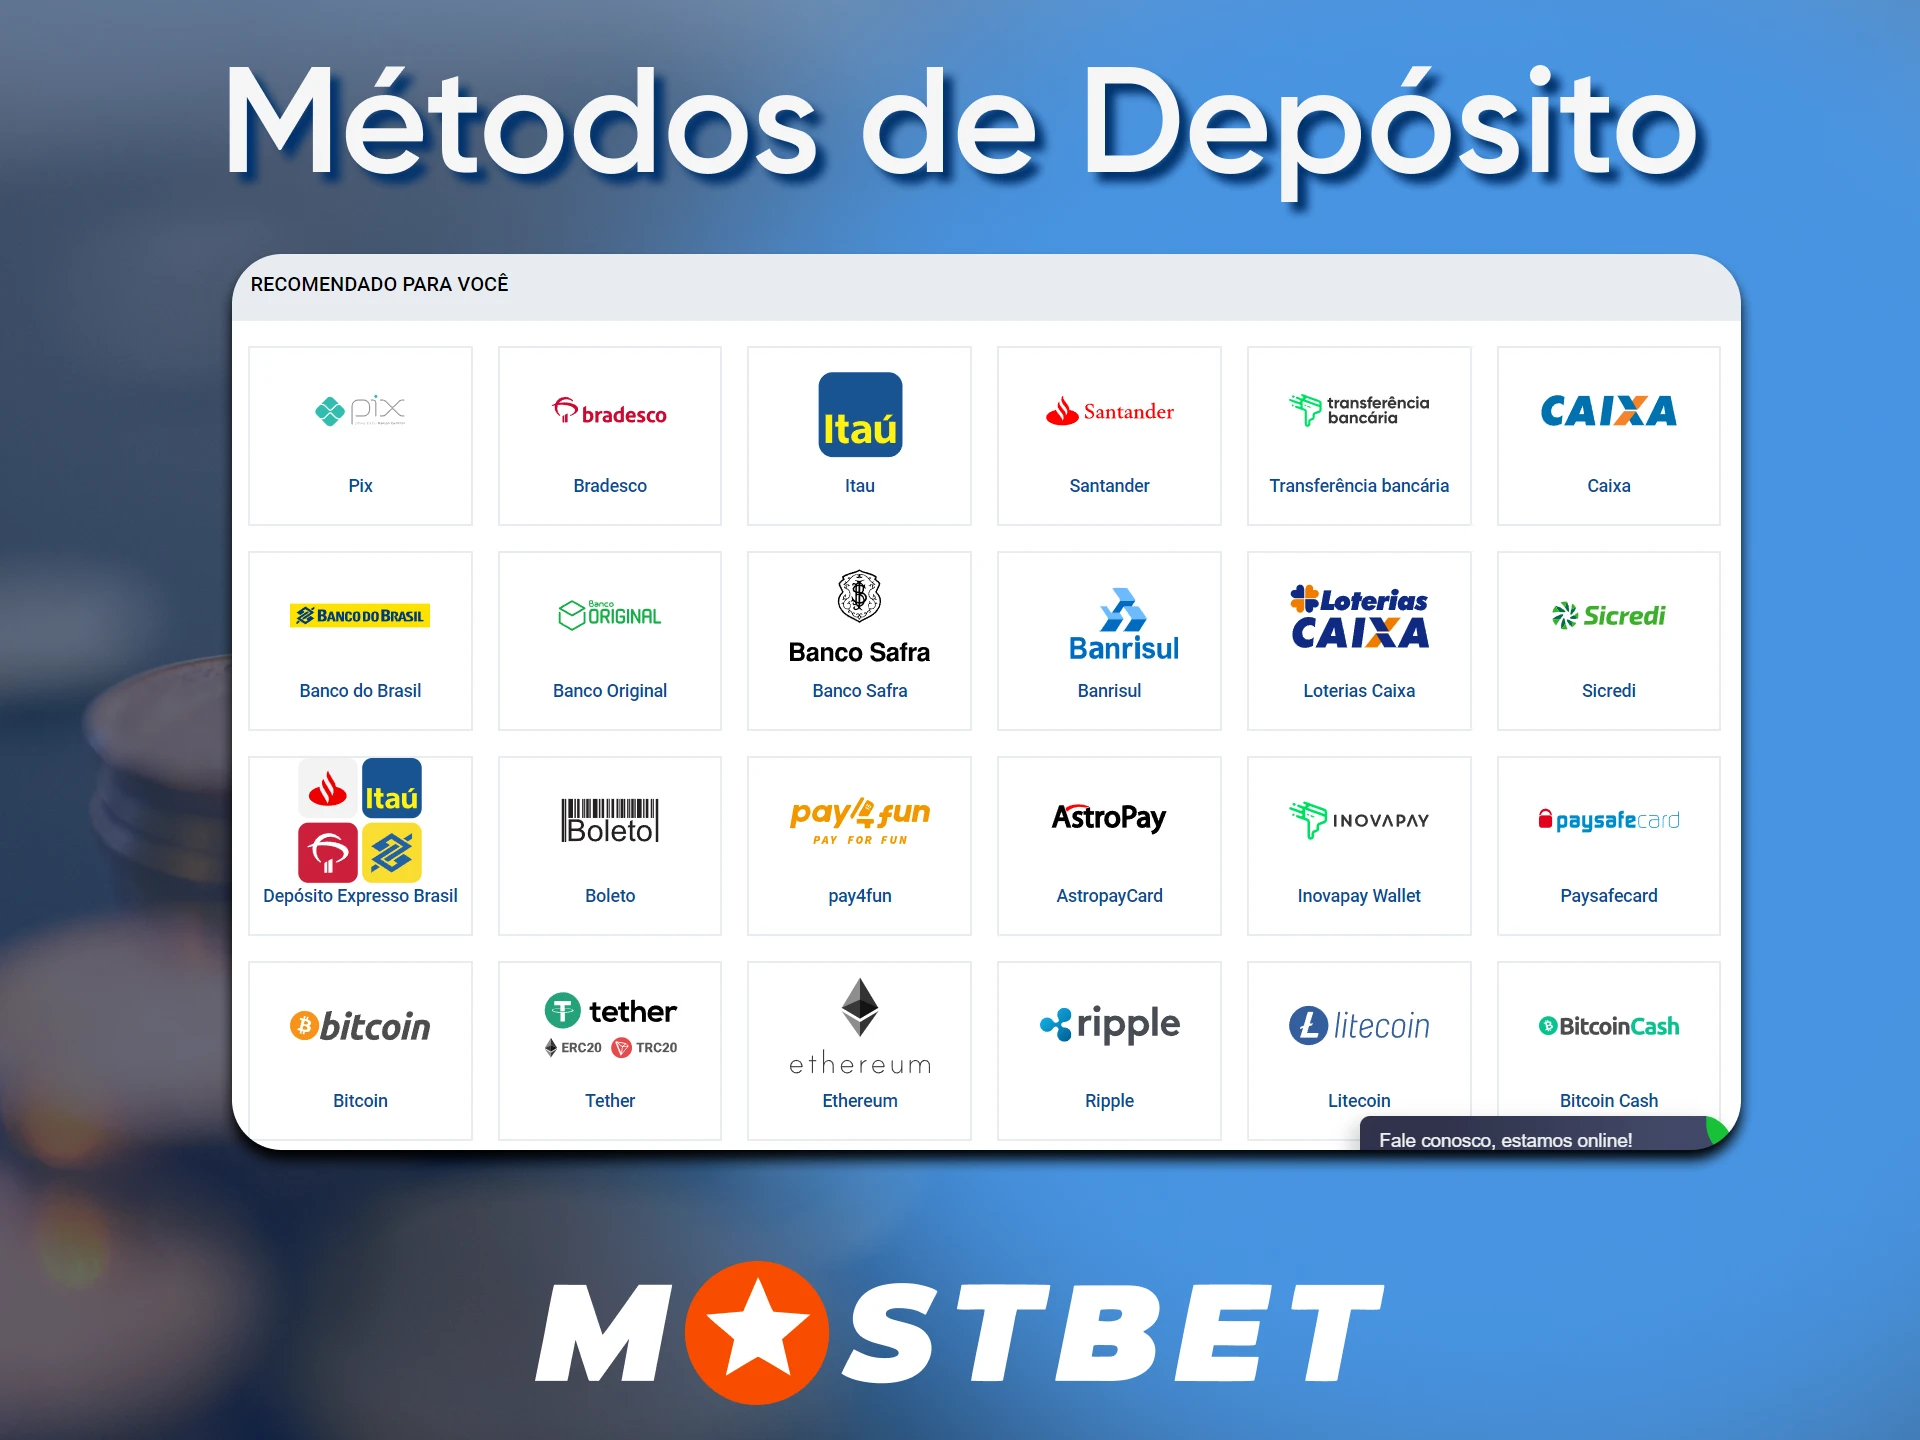 A Mostbet apóia os métodos populares de depósito no Brasil.